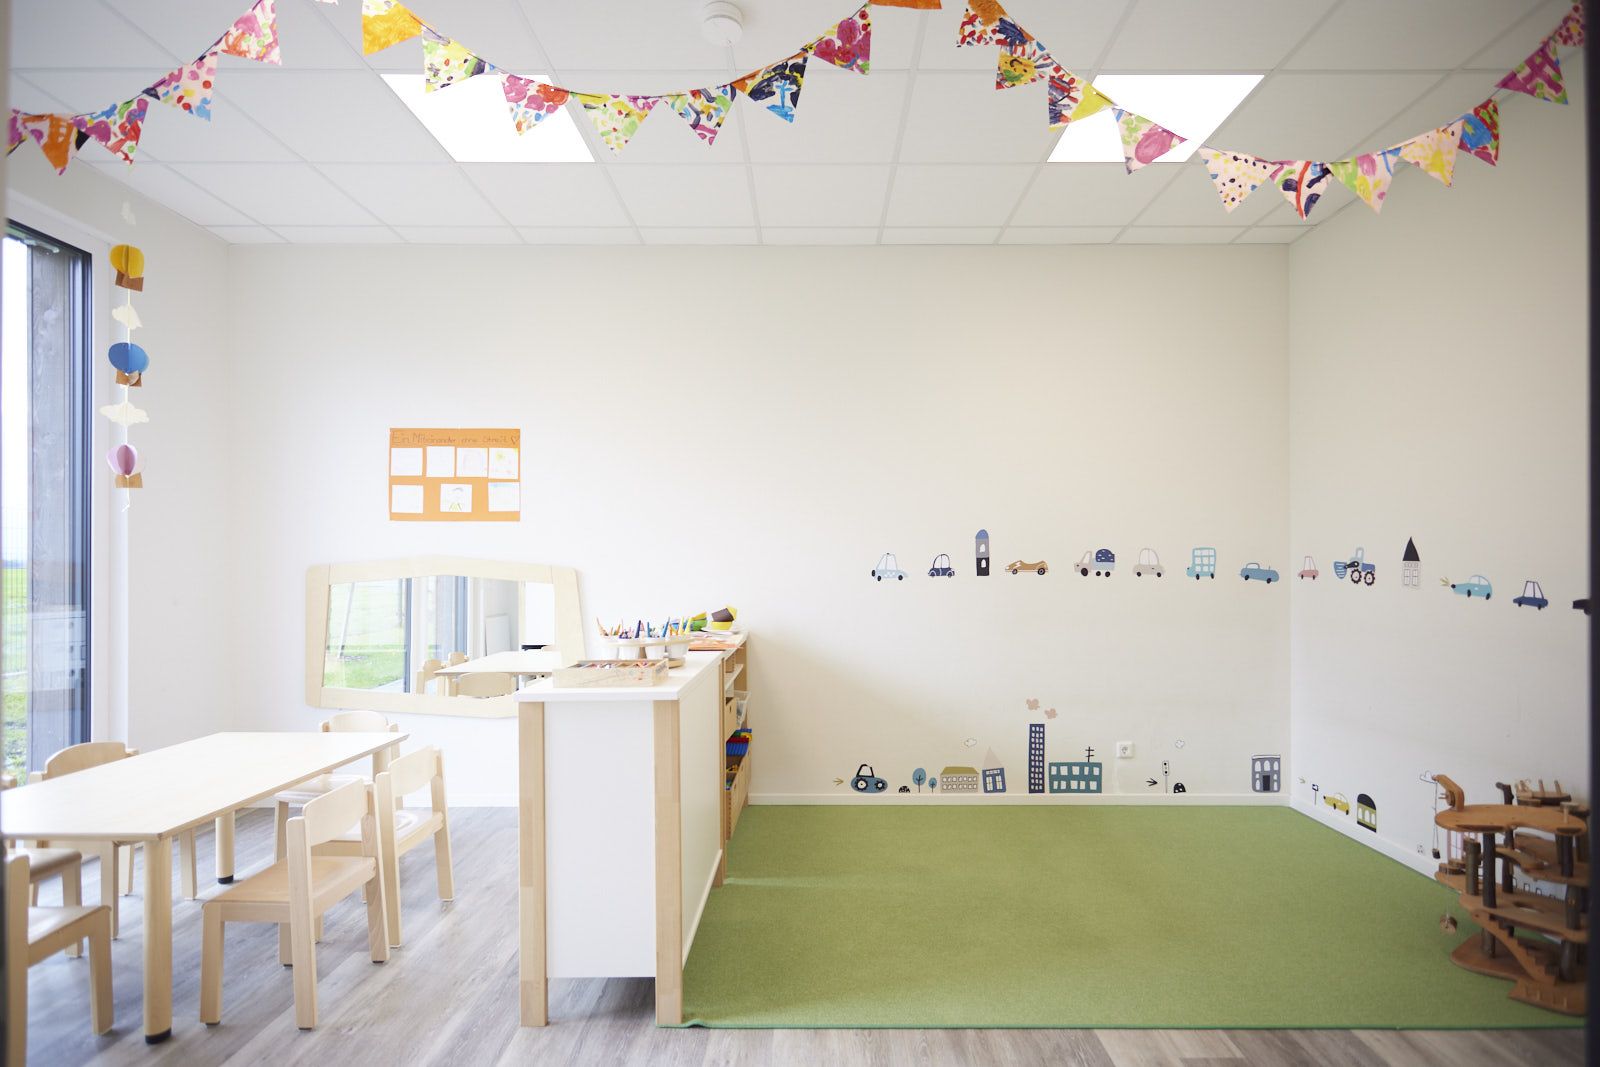 AHF Kindertagesstätte in Bad Lippspringe. Kreativraum, Bastelraum mit grünem Teppich. EPU Architekten